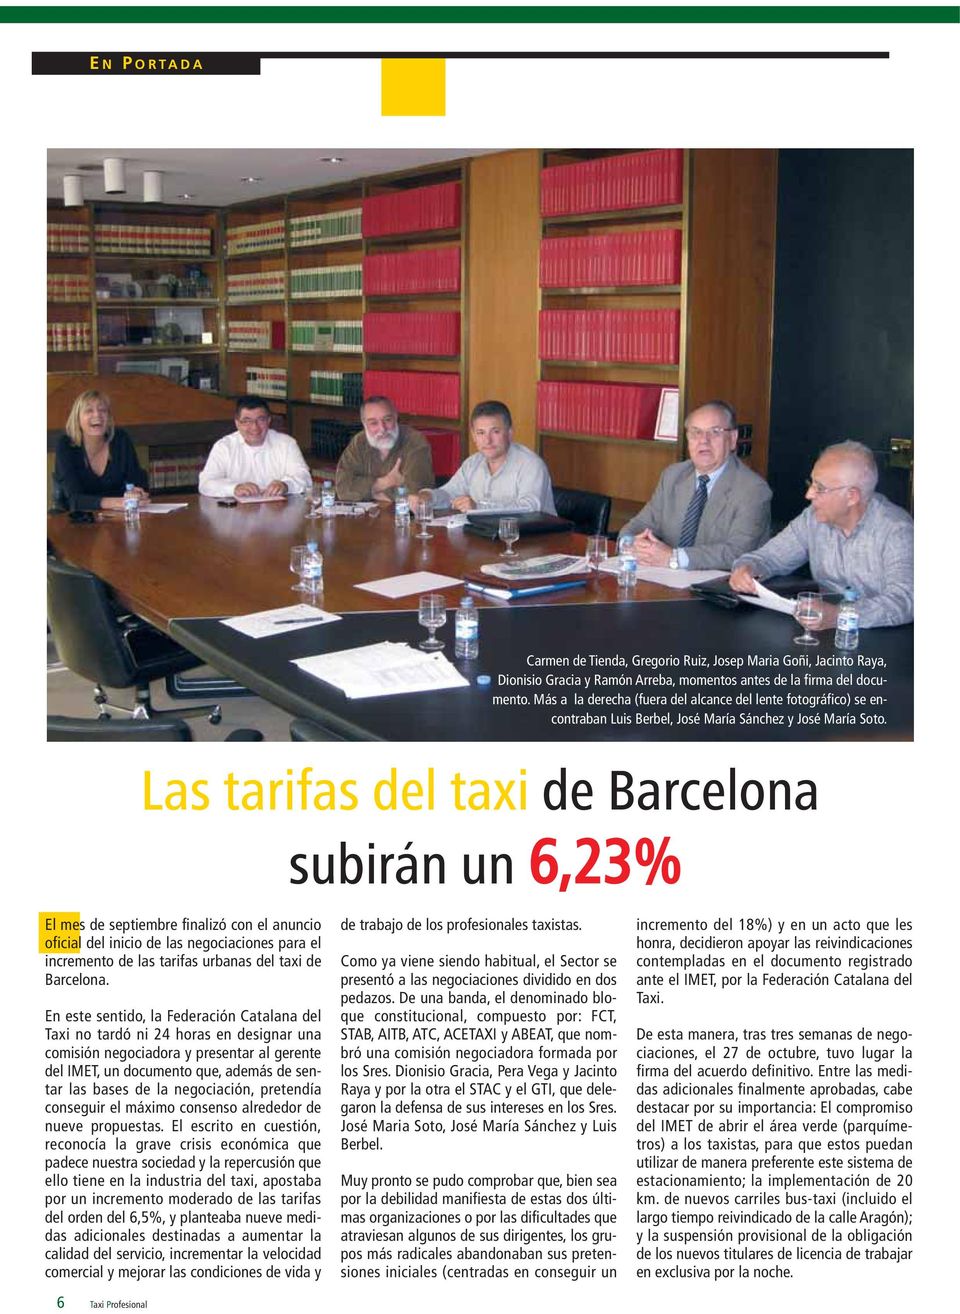 Las tarifas del taxi de Barcelona subirán un 6,23% El mes de septiembre finalizó con el anuncio oficial del inicio de las negociaciones para el incremento de las tarifas urbanas del taxi de Barcelona.